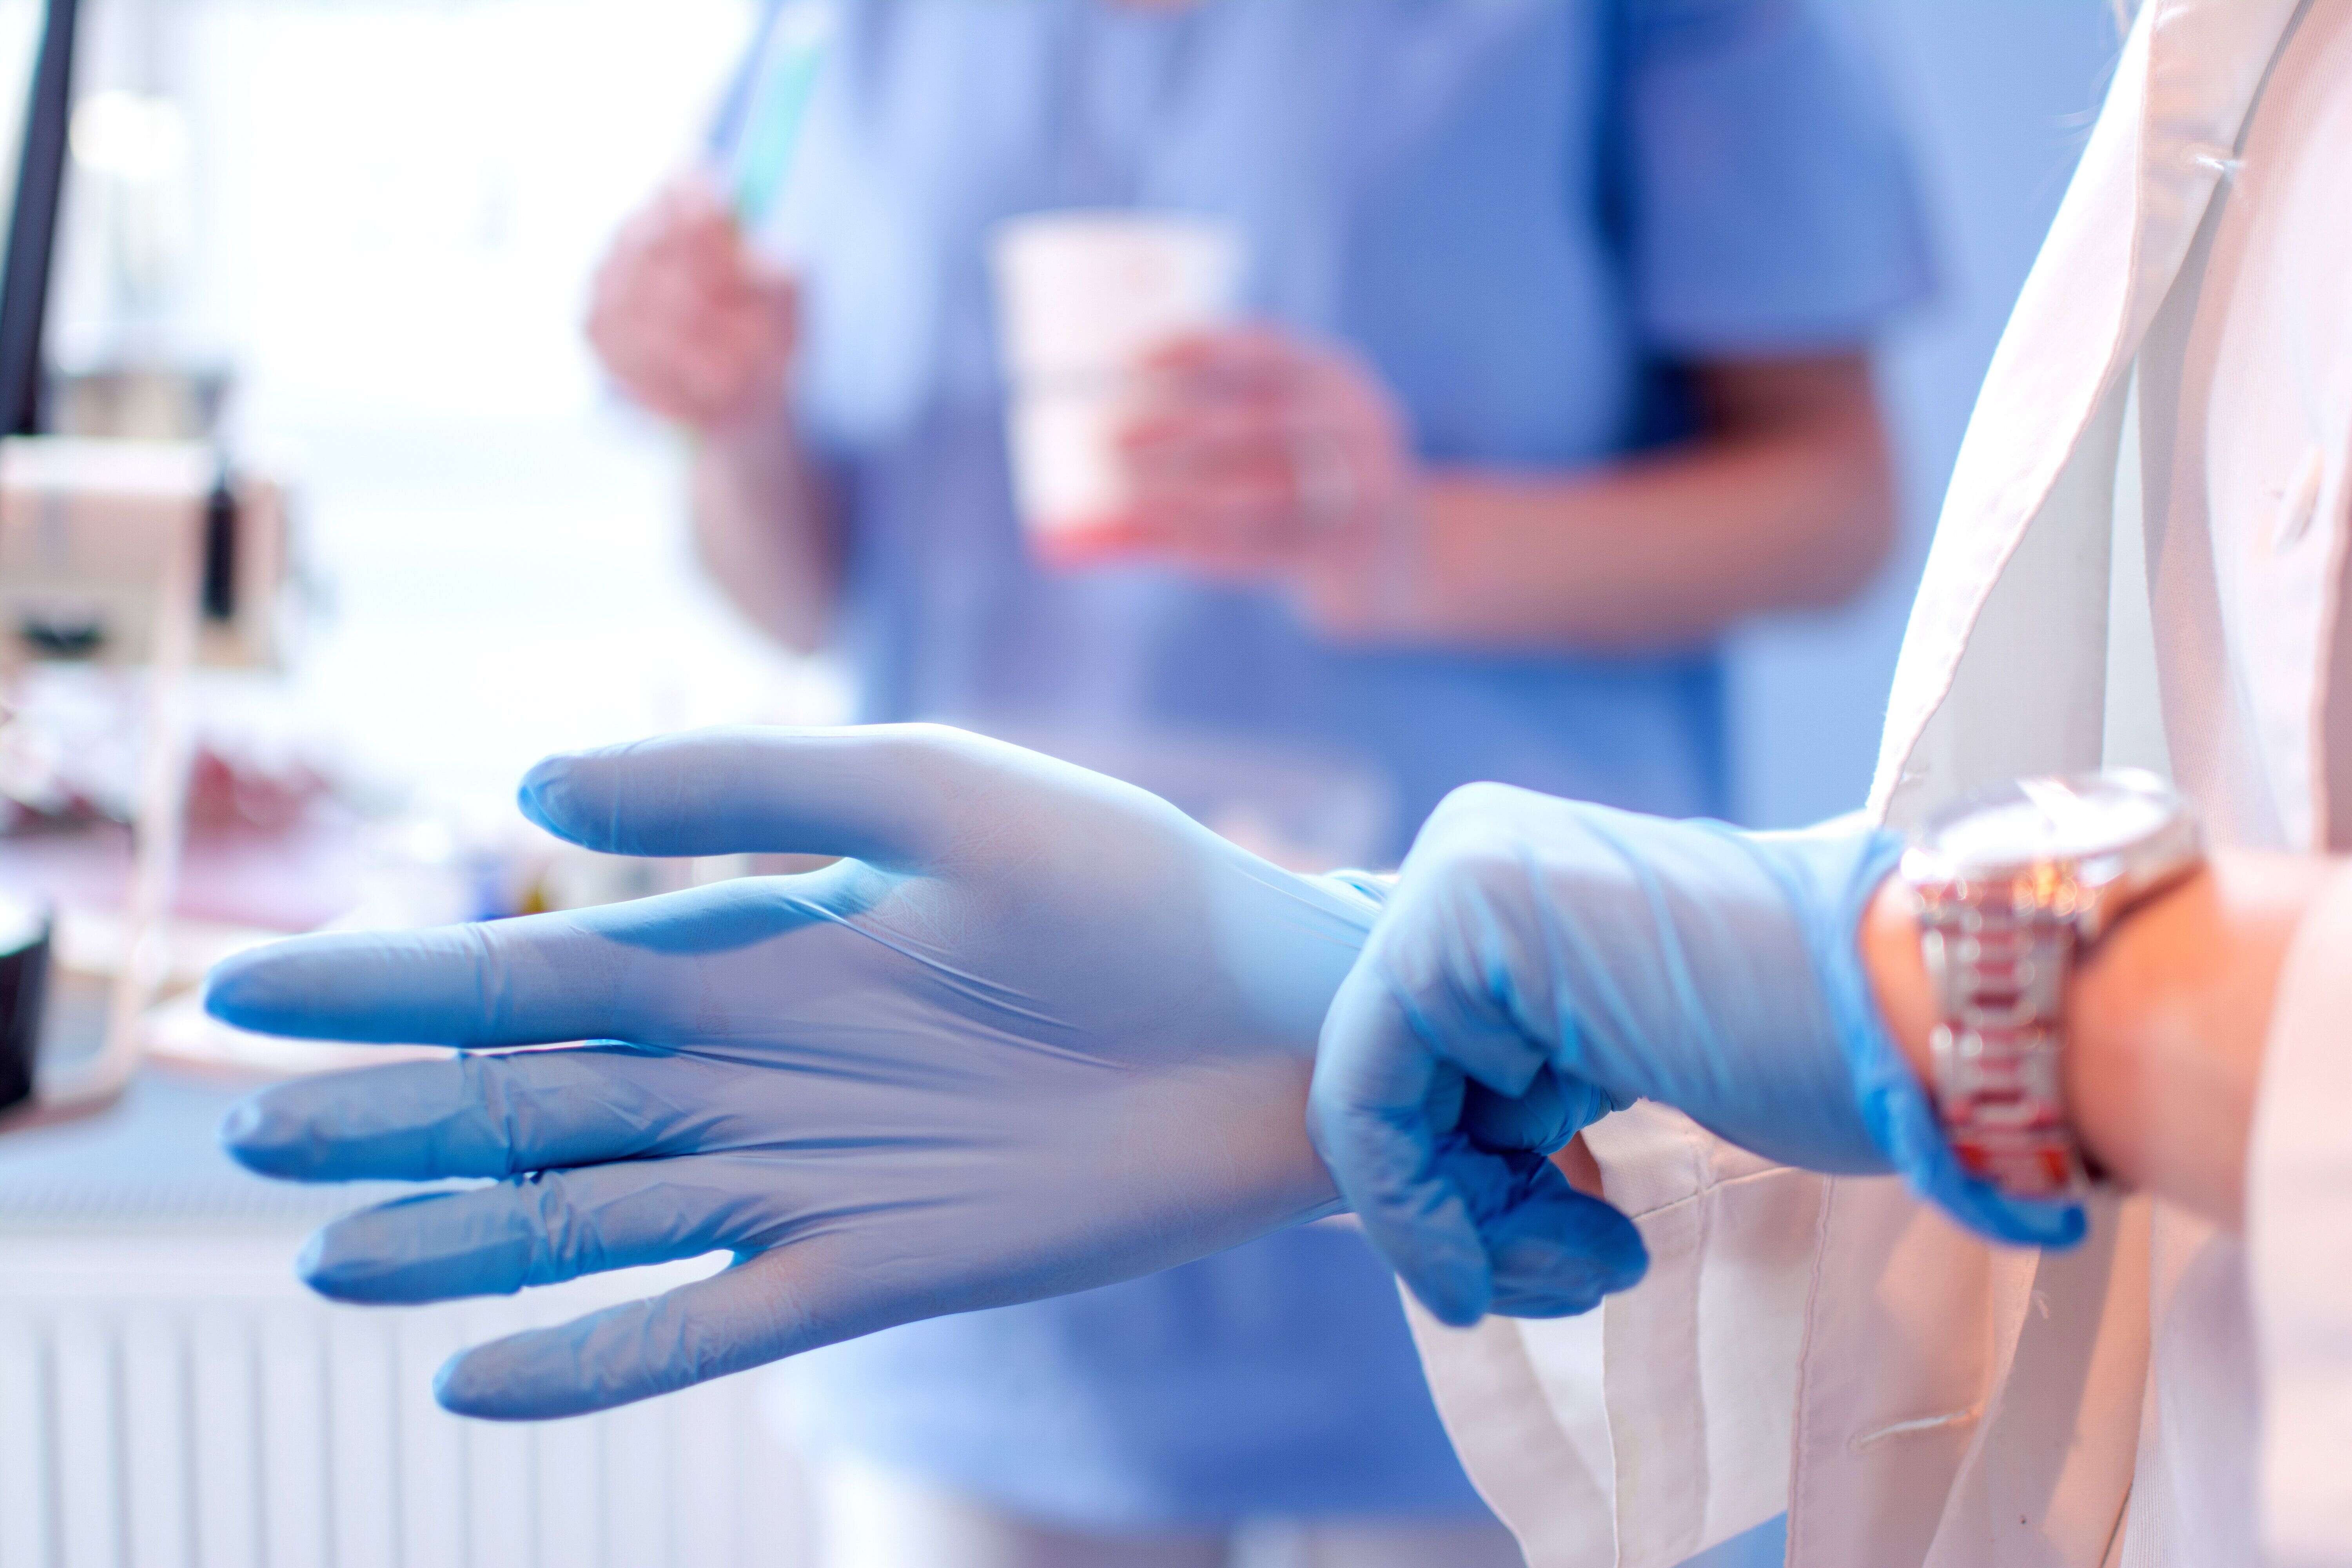 Les professionnels de santé s'inquiètent d'une pénurie de gants chirurgicaux